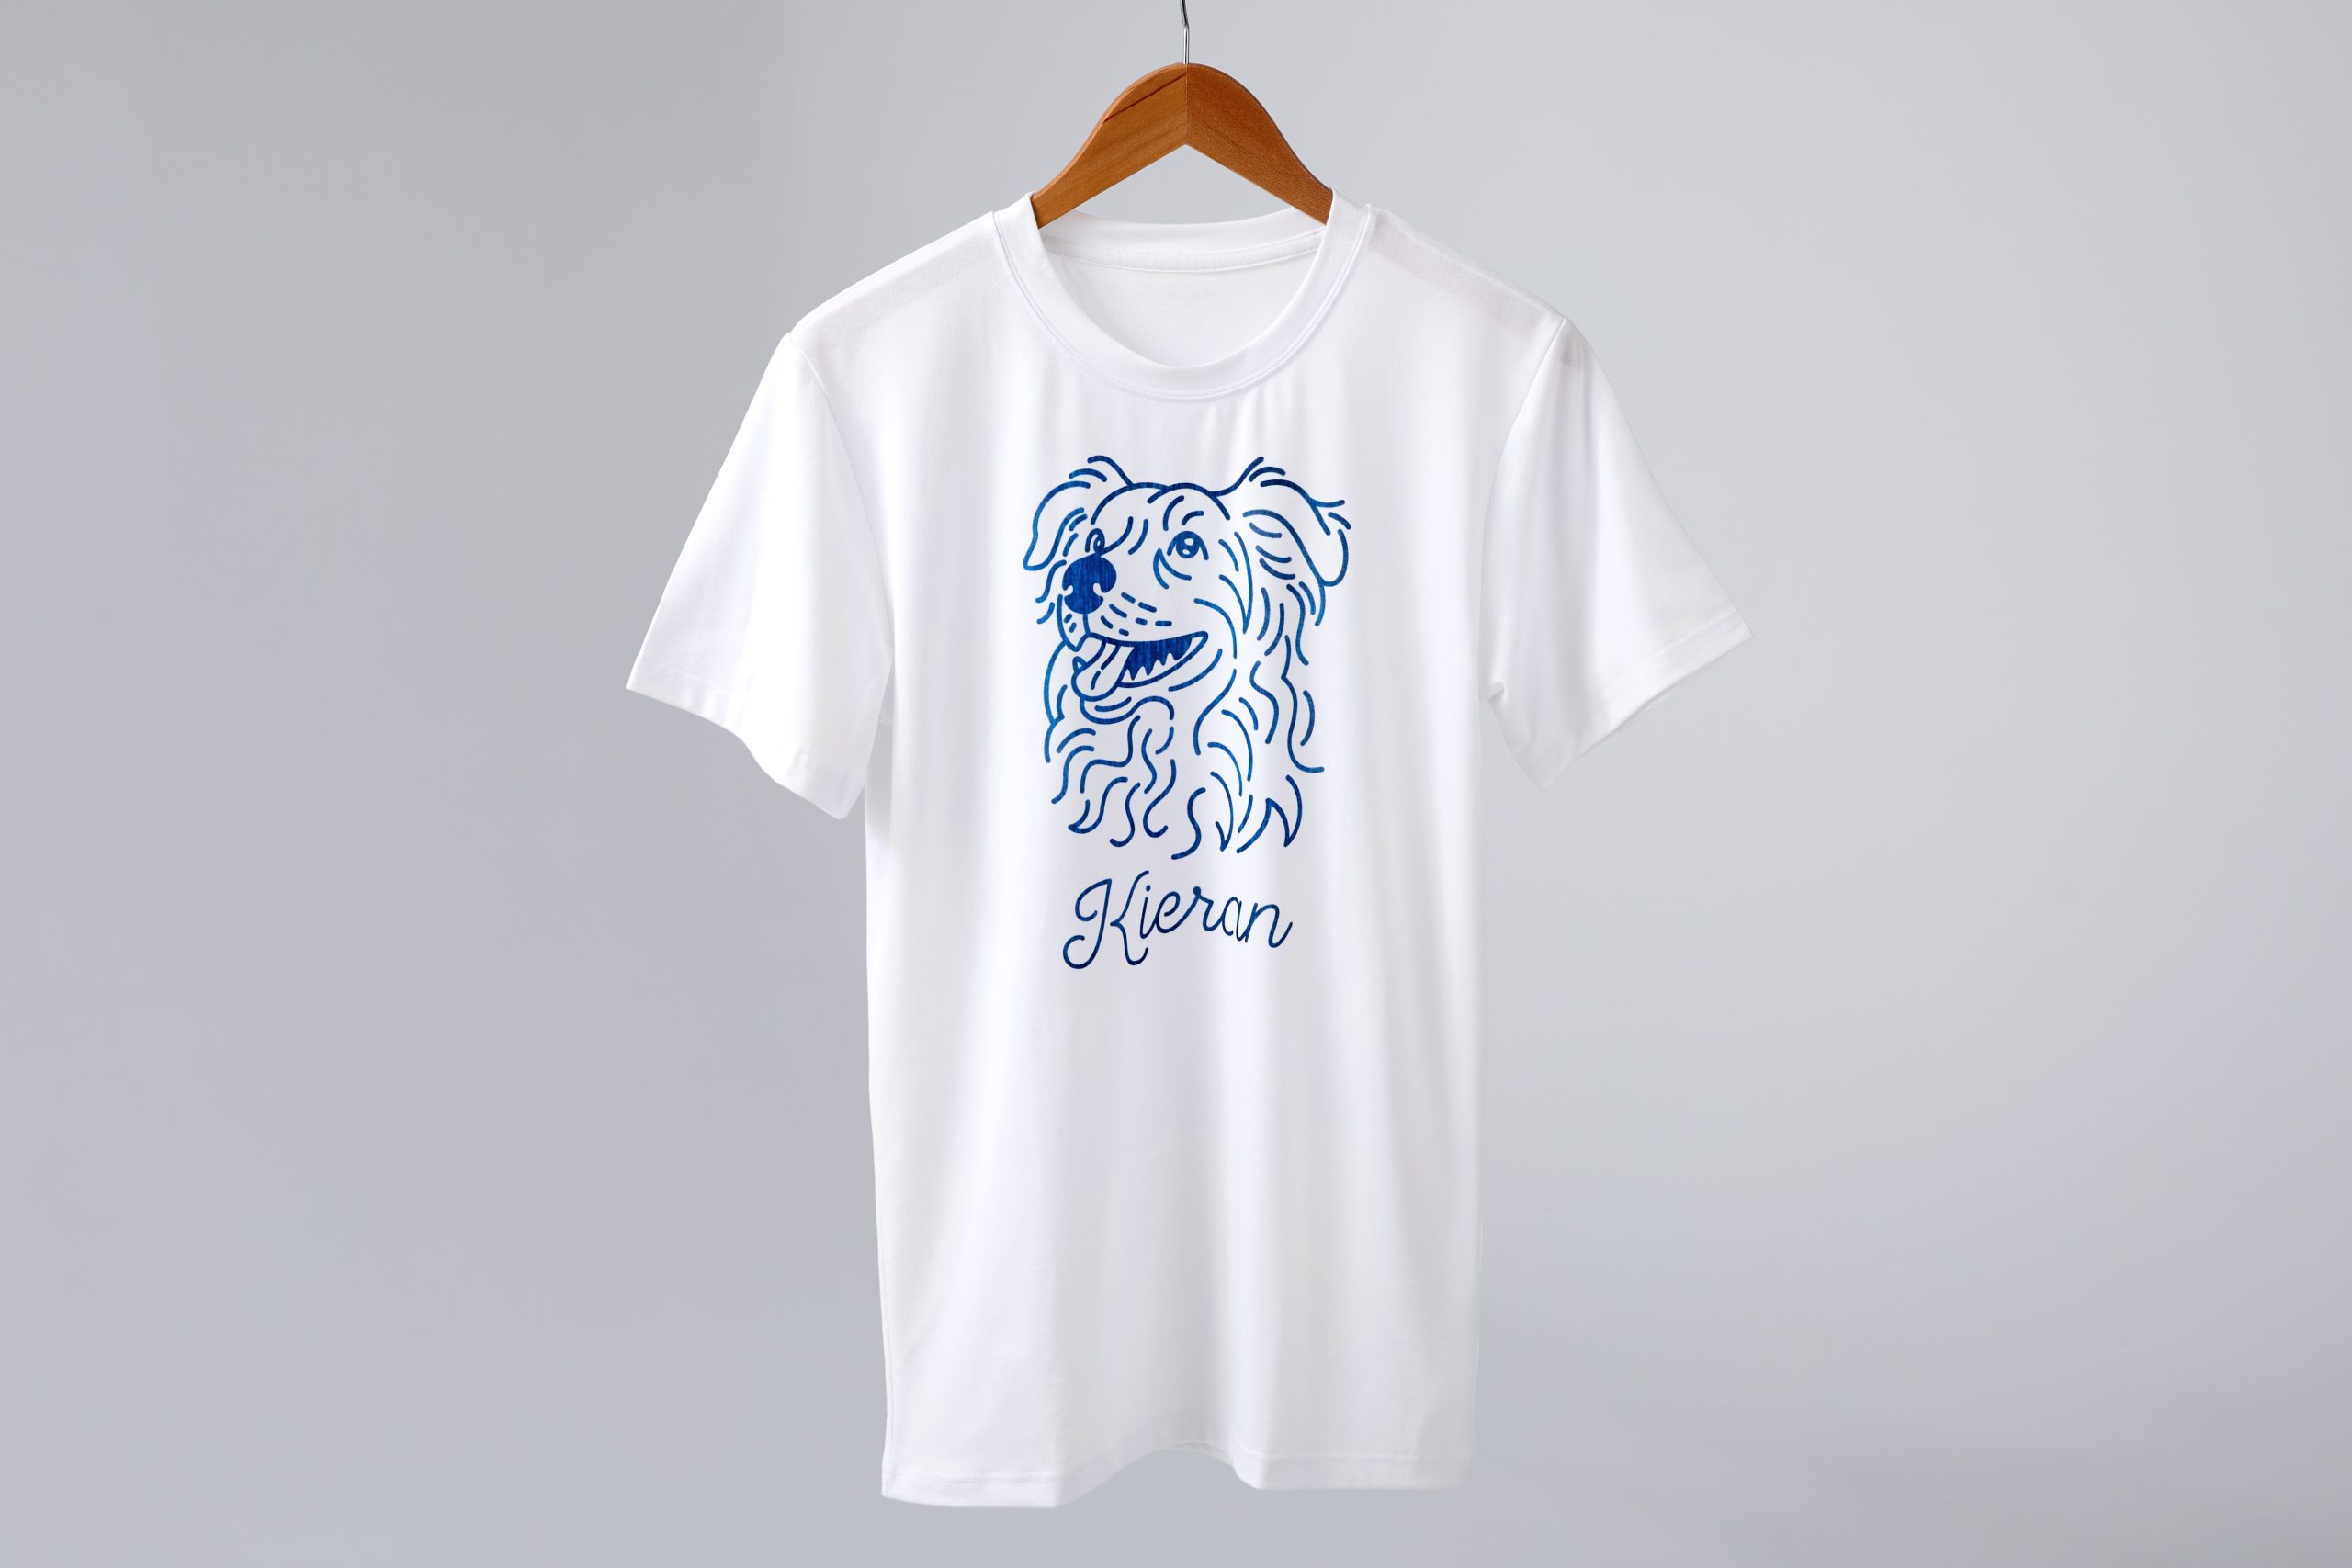 Personalised Dog t-shirt gift idea